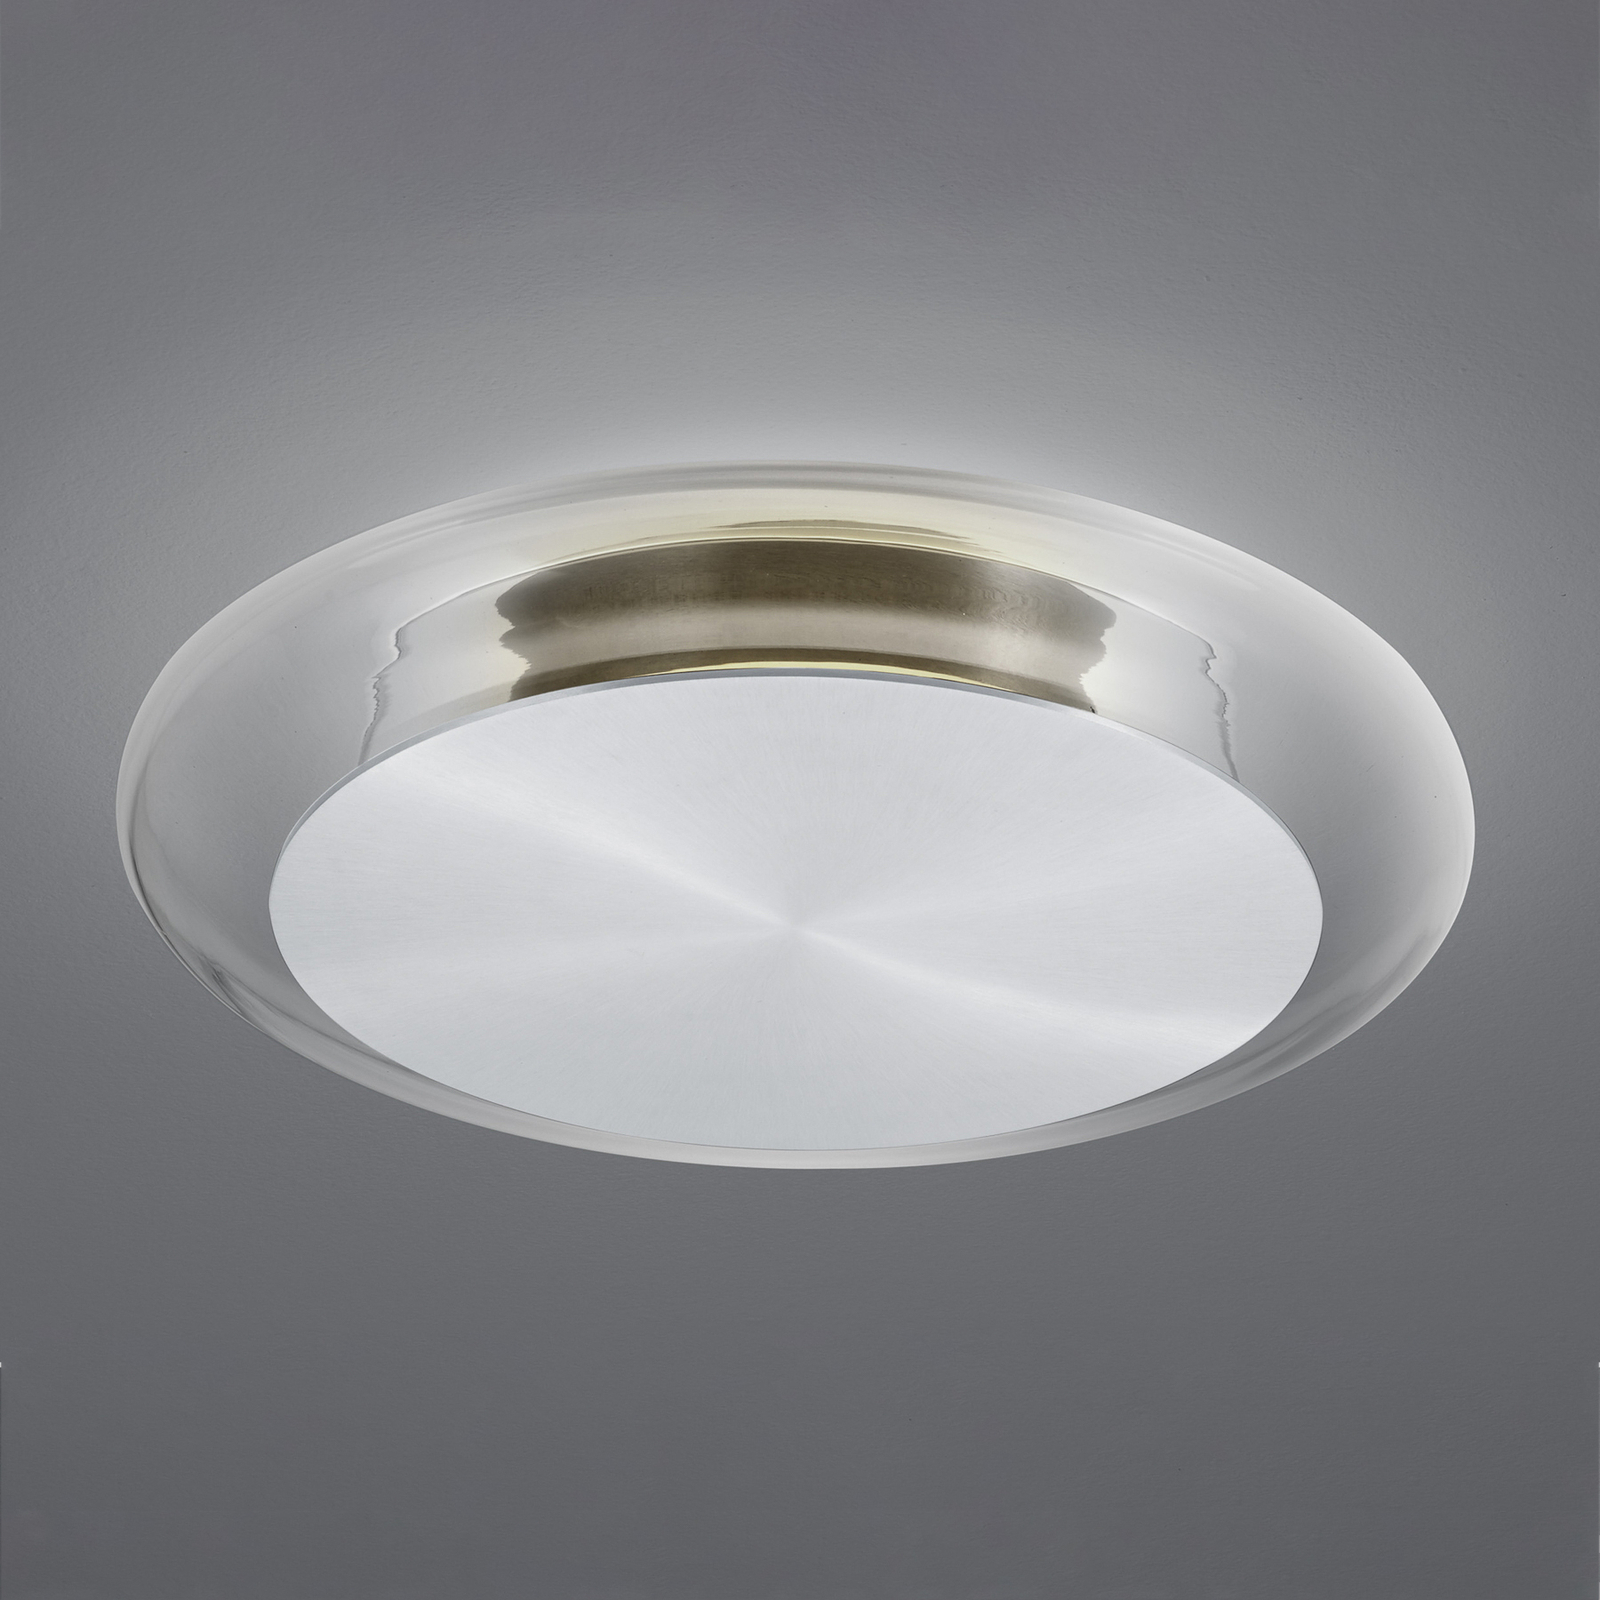 BANKAMP Cloud LED ceiling lamp, dimmable aluminium